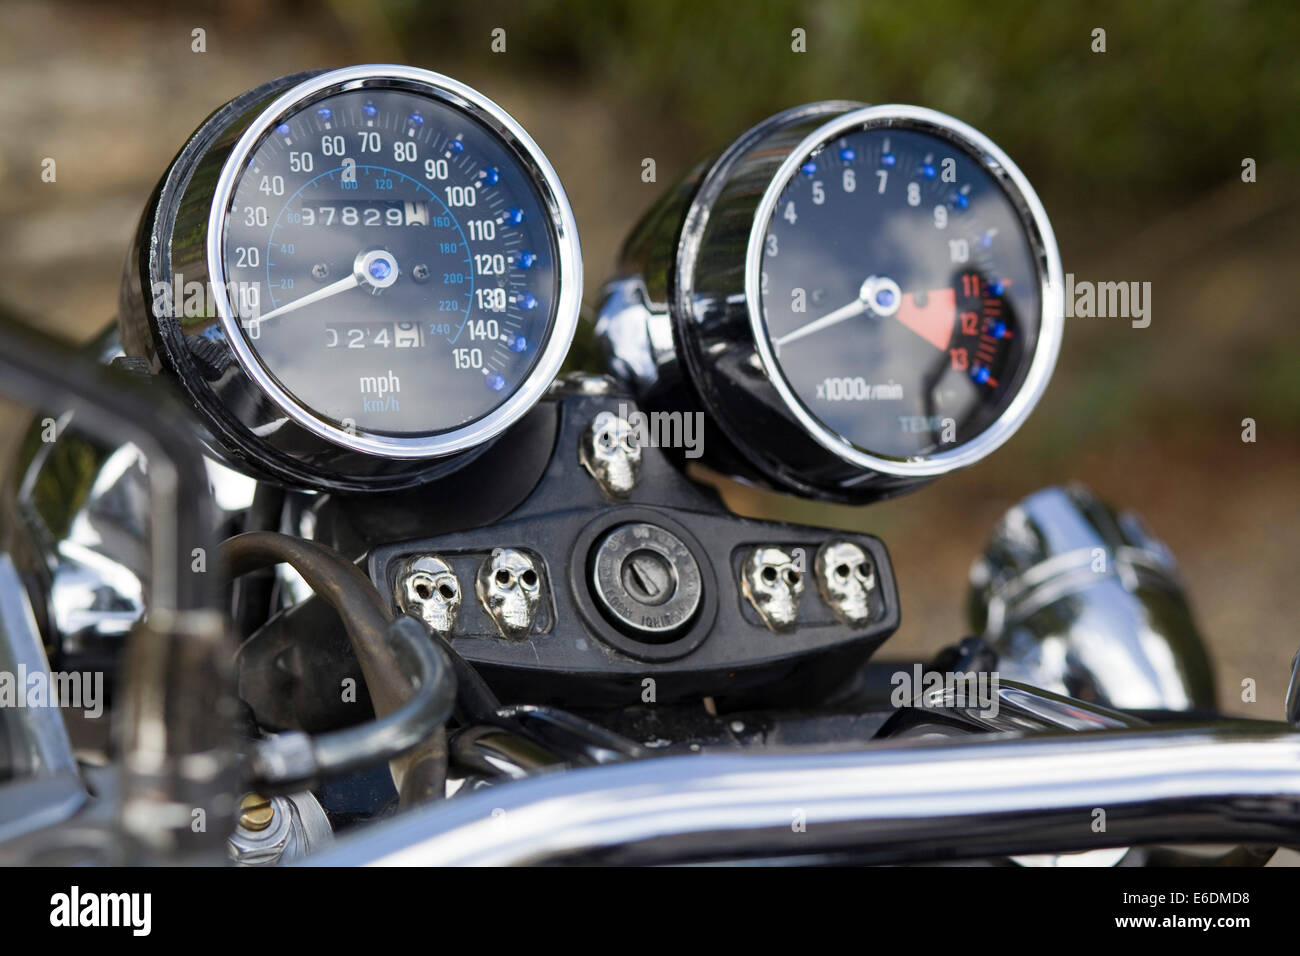 Tachometer f. classische Motorräder bis140km/h, Tachometer